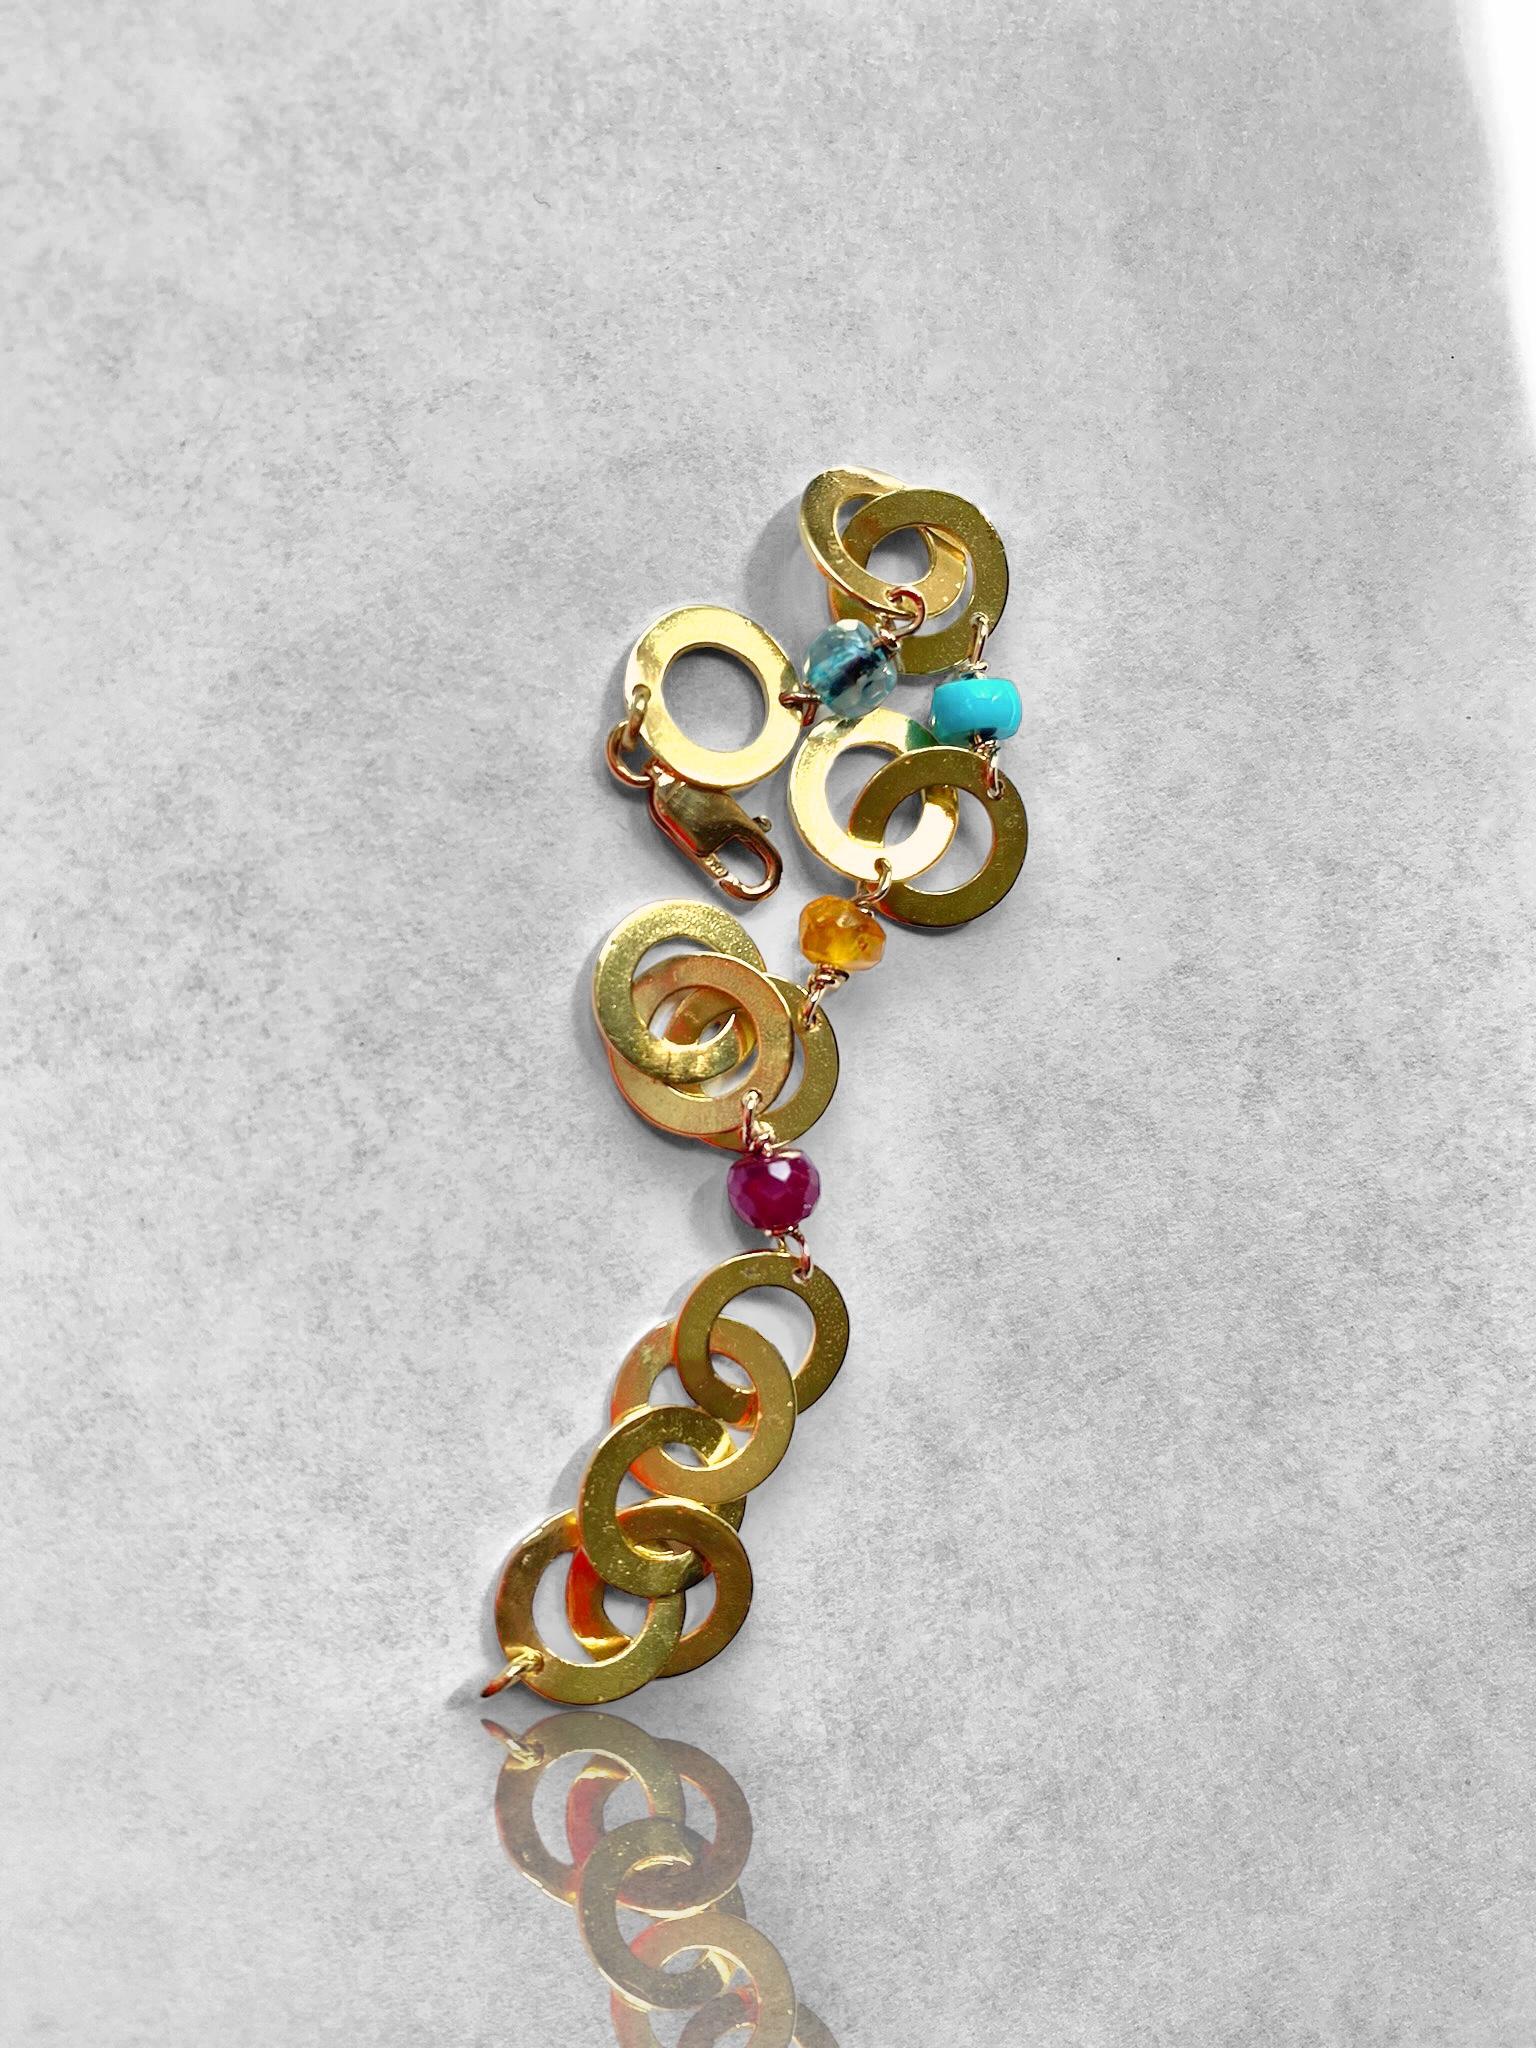 Voici l'époustouflant bracelet à chaîne en or jaune 18 carats de Rossella Ugolini, un véritable chef-d'œuvre qui allie sans effort sportivité et élégance. 
Fabriqué avec une attention méticuleuse aux détails, ce bracelet est un symbole de luxe